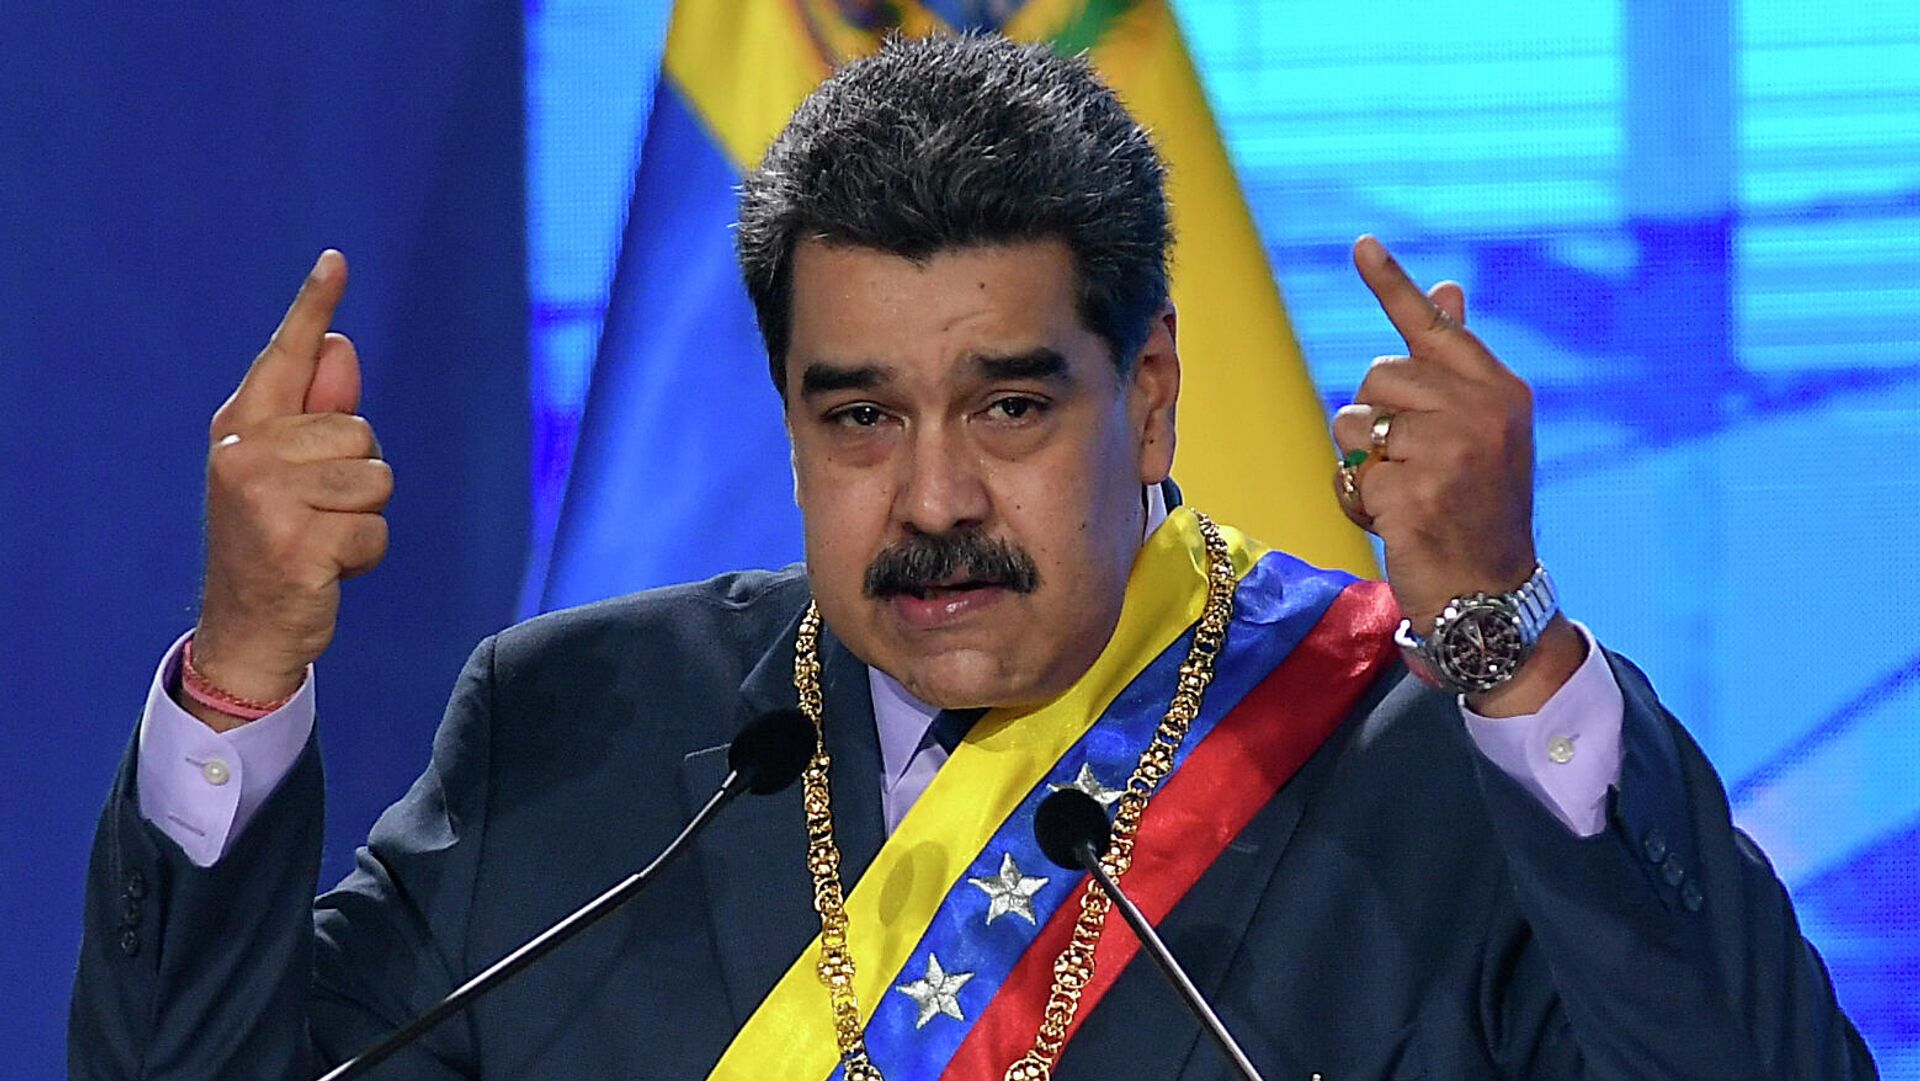 Nicolás Maduro, presidente de Venezuela - Sputnik Mundo, 1920, 06.08.2021